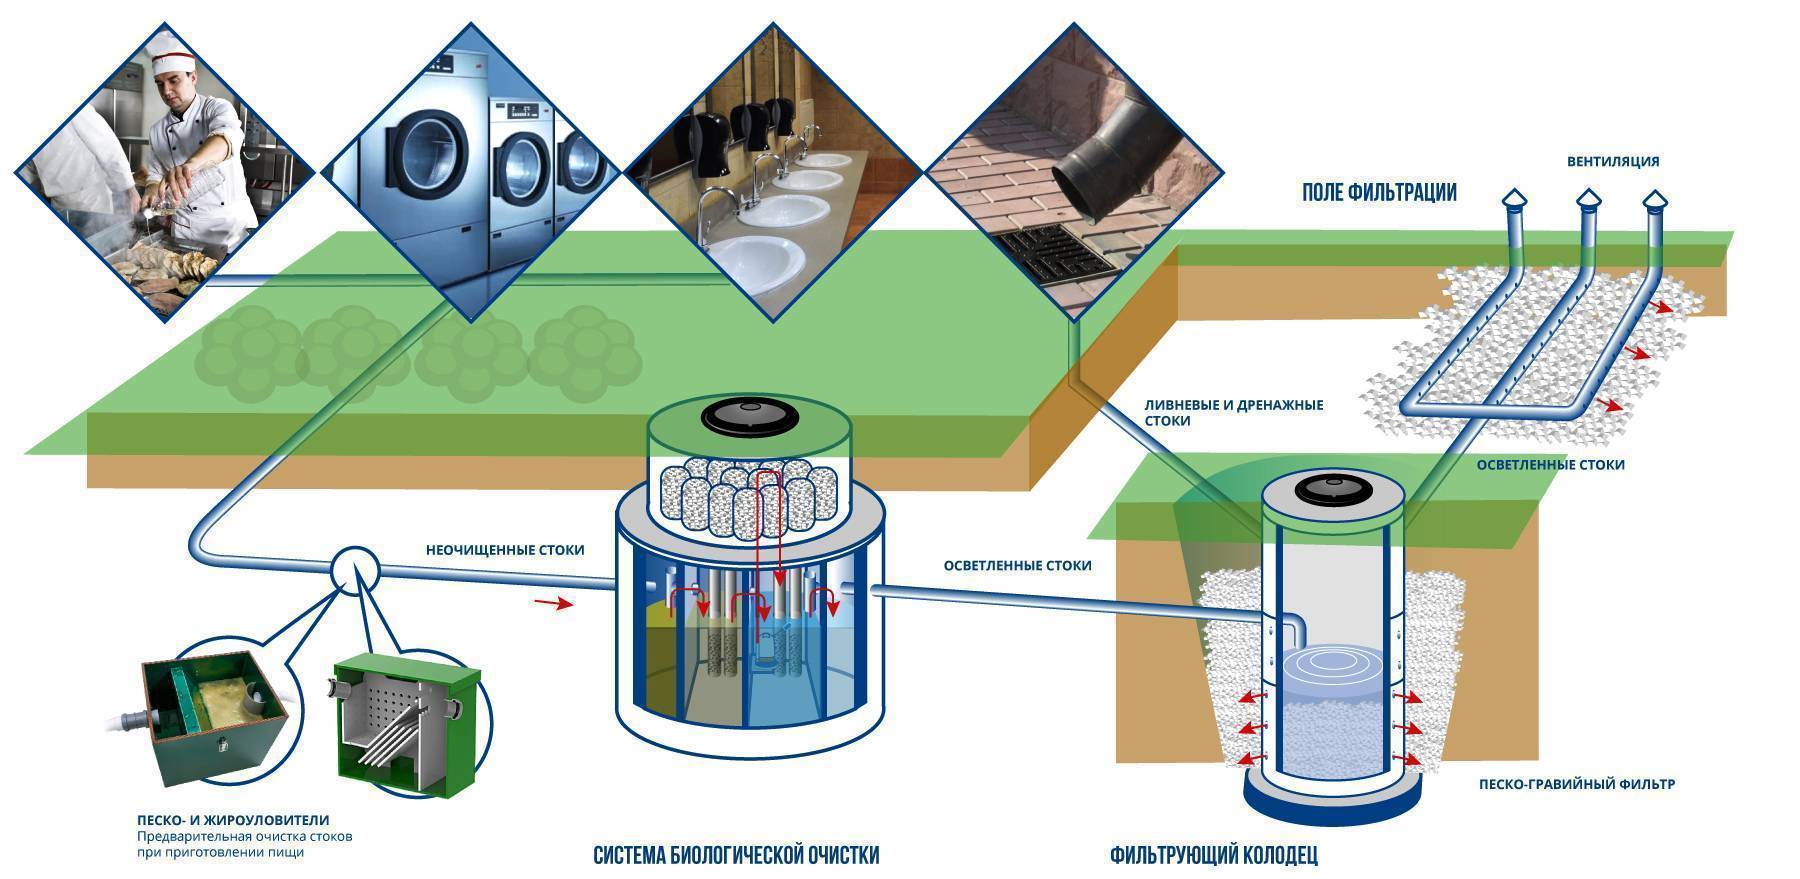 Автономная канализация для дома - биофильтр и аэротенк